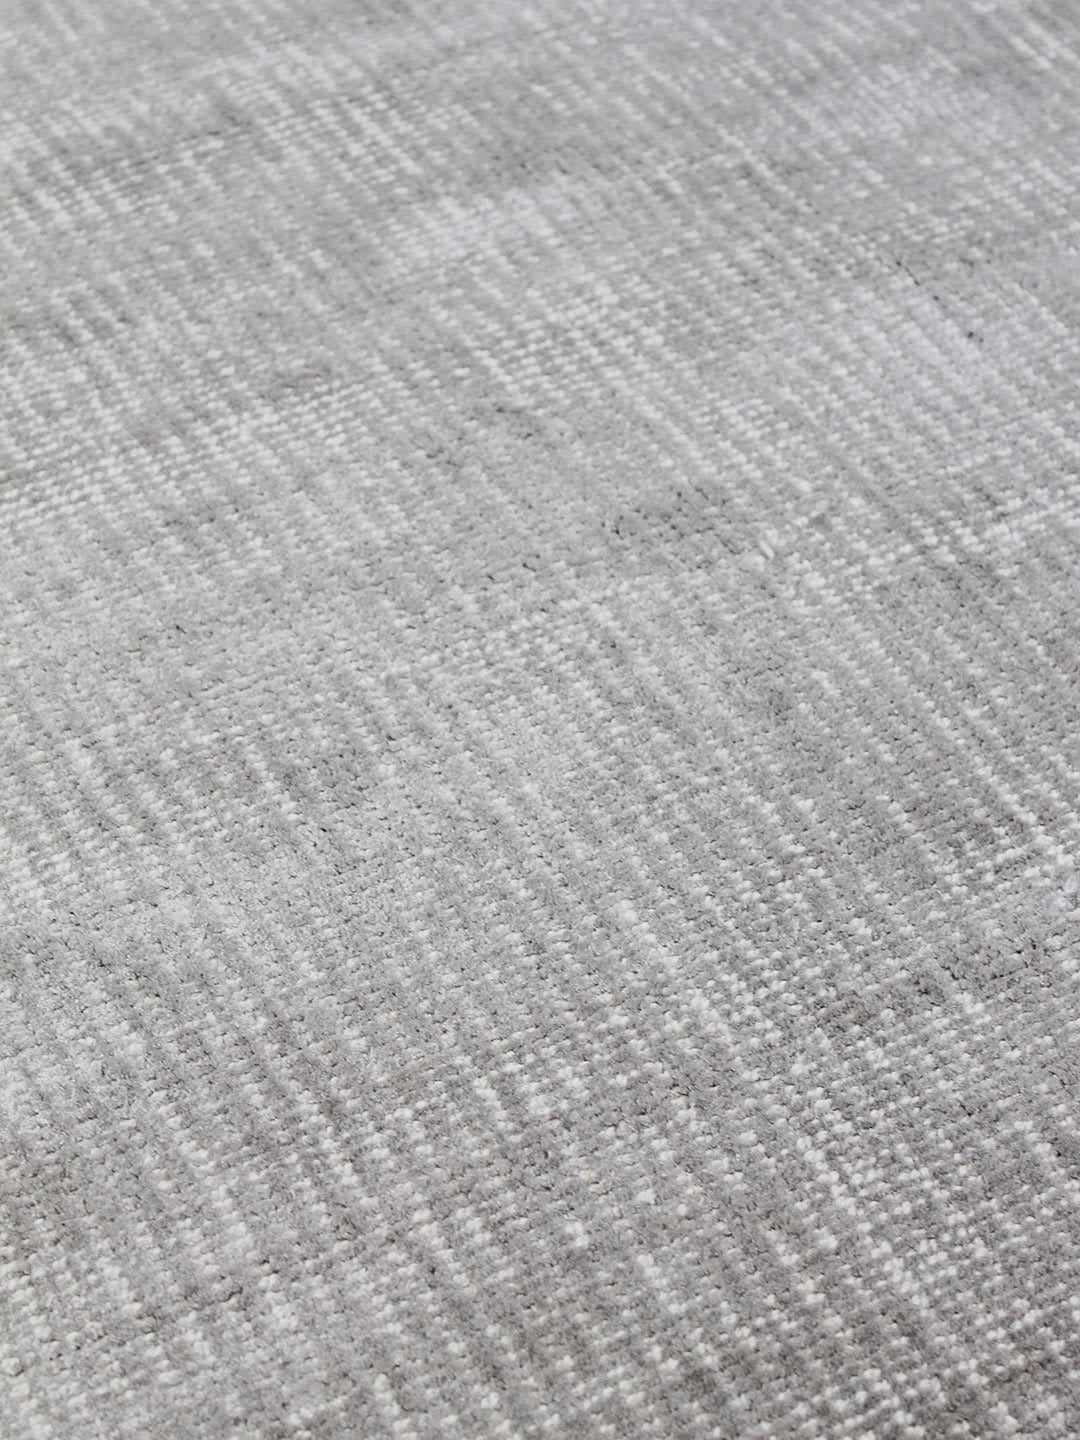 Denver Silver speckled two-tone rug detail image